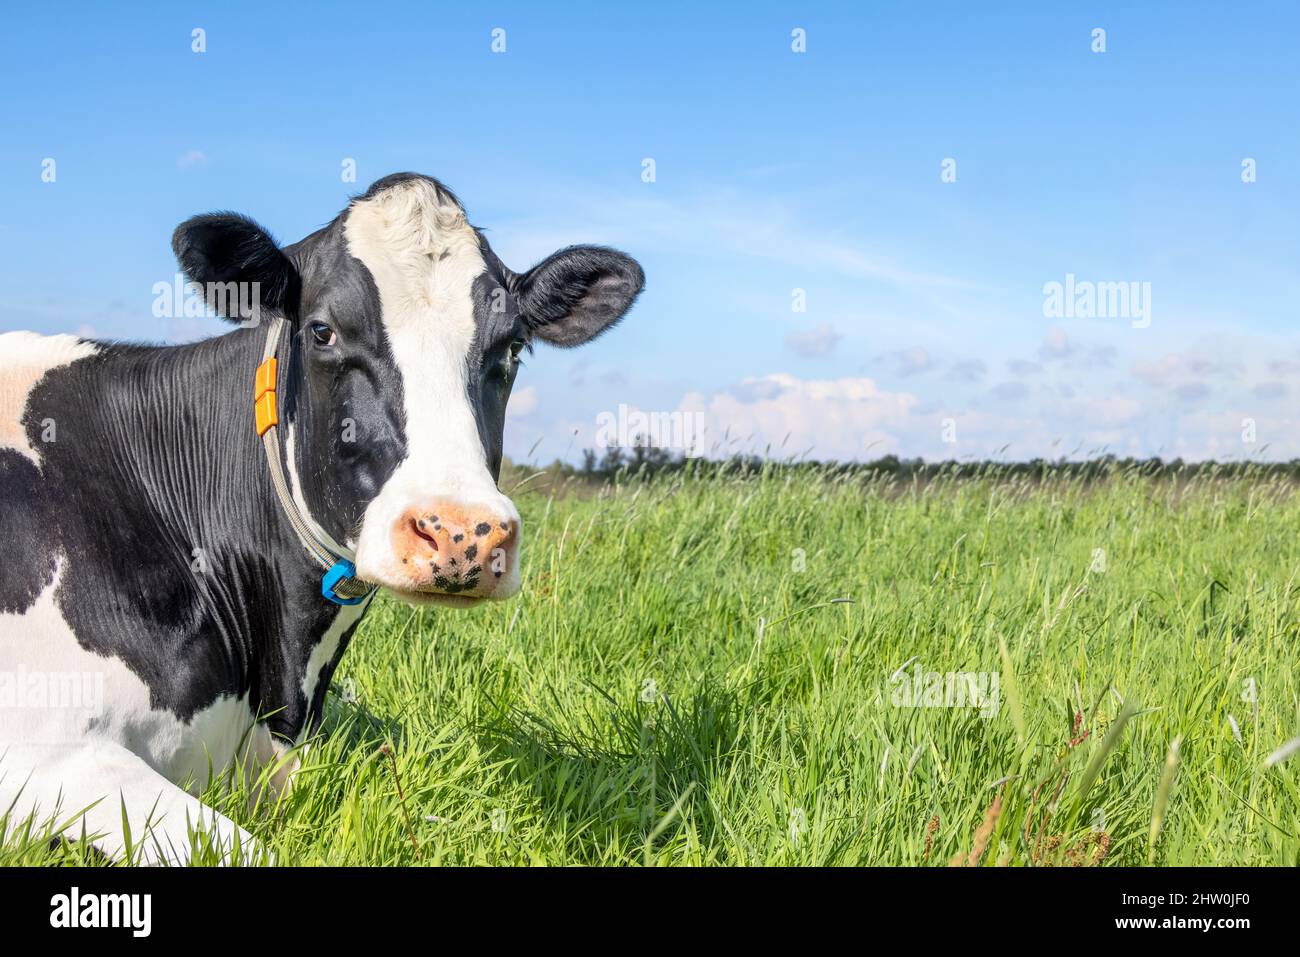 Vache, noir et blanc curieux regard doux, sur le côté gauche de la photo dans un champ vert, ciel bleu Banque D'Images